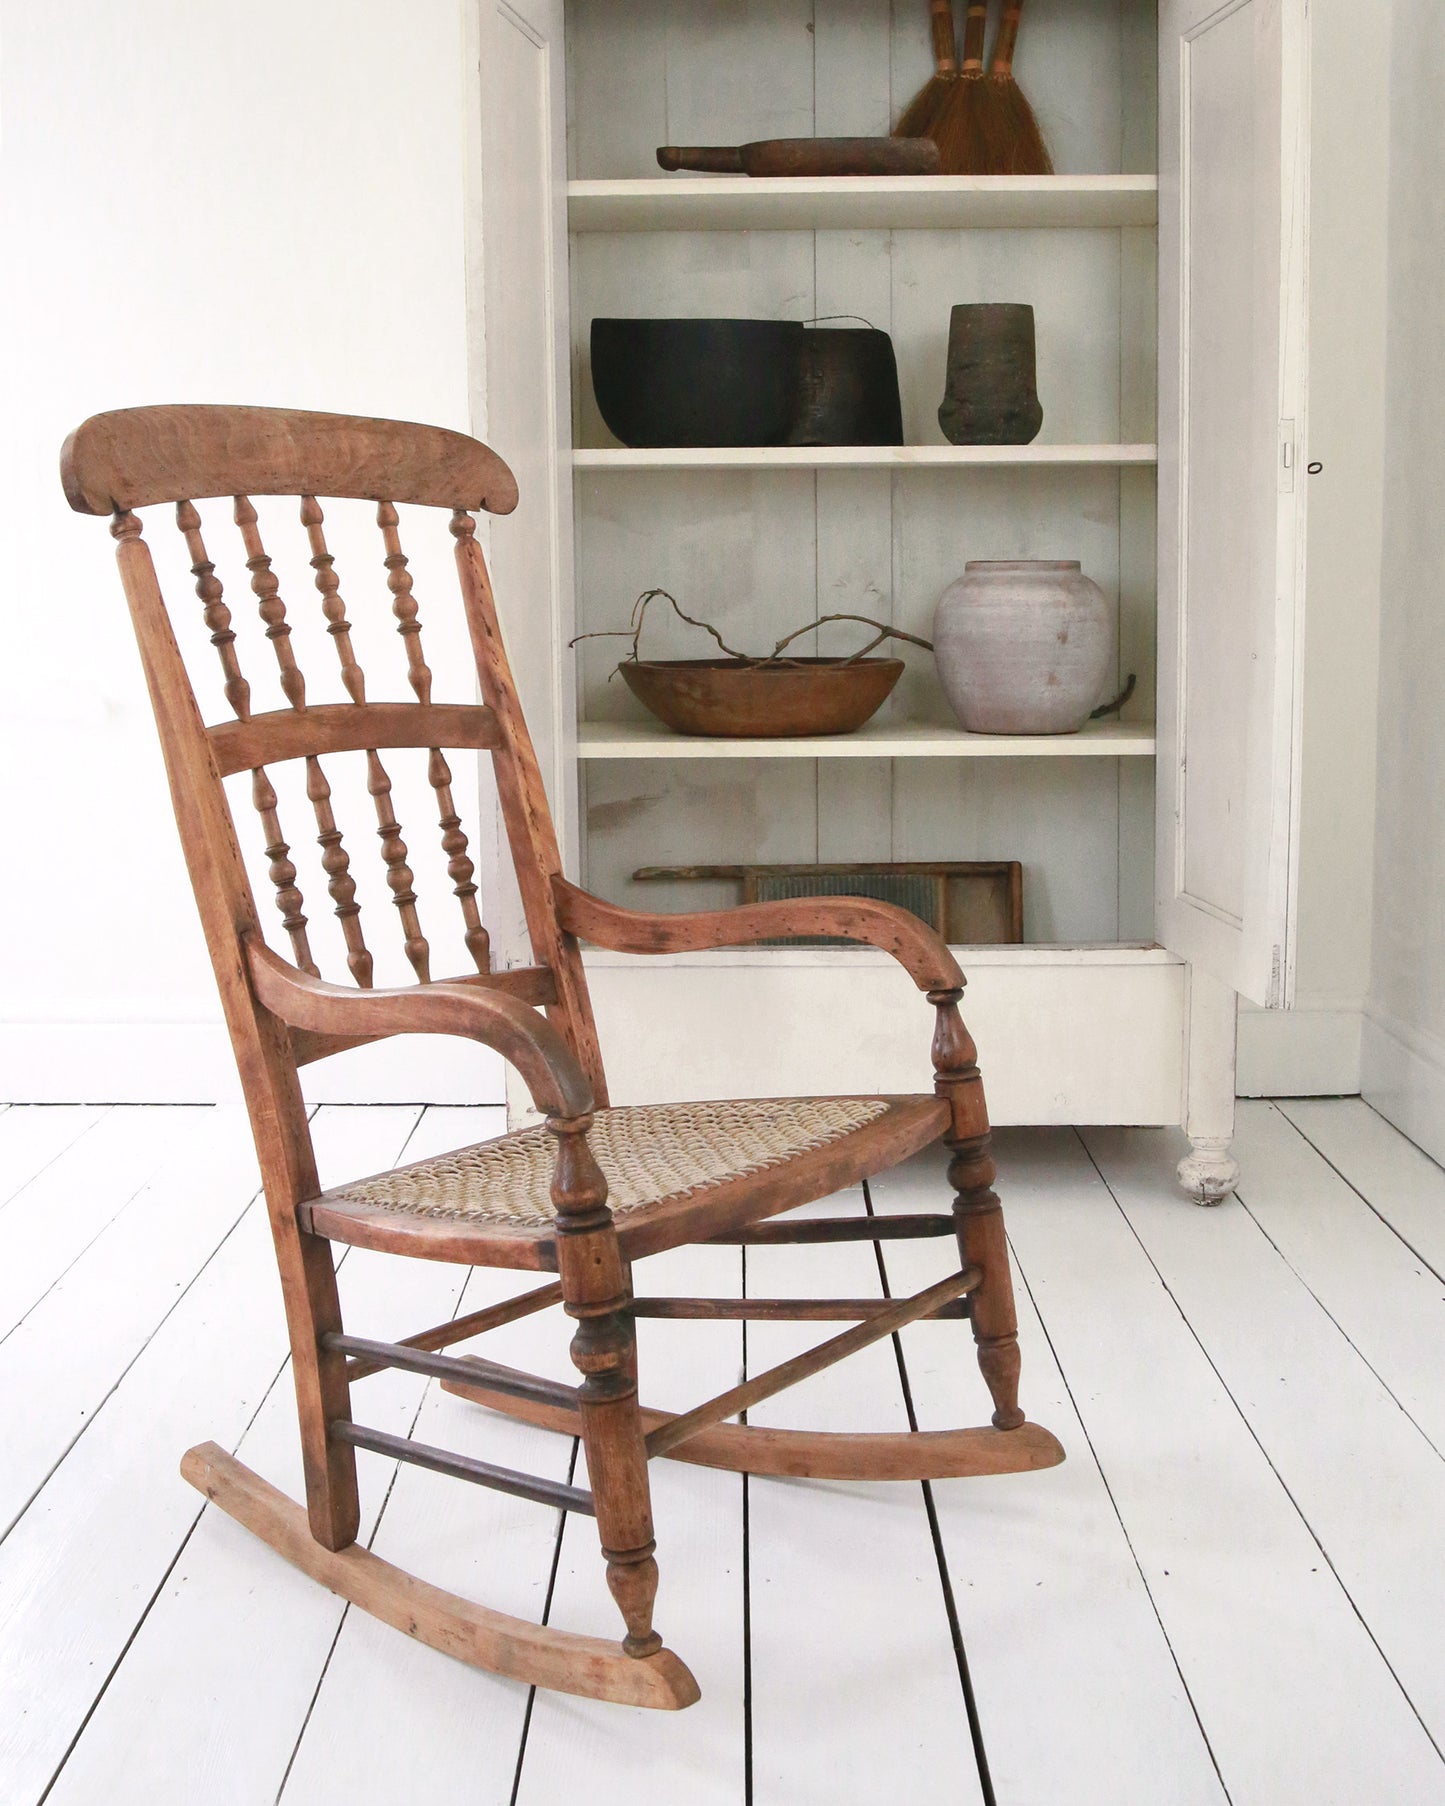 Vintage preloved wooden rocking chair in situ